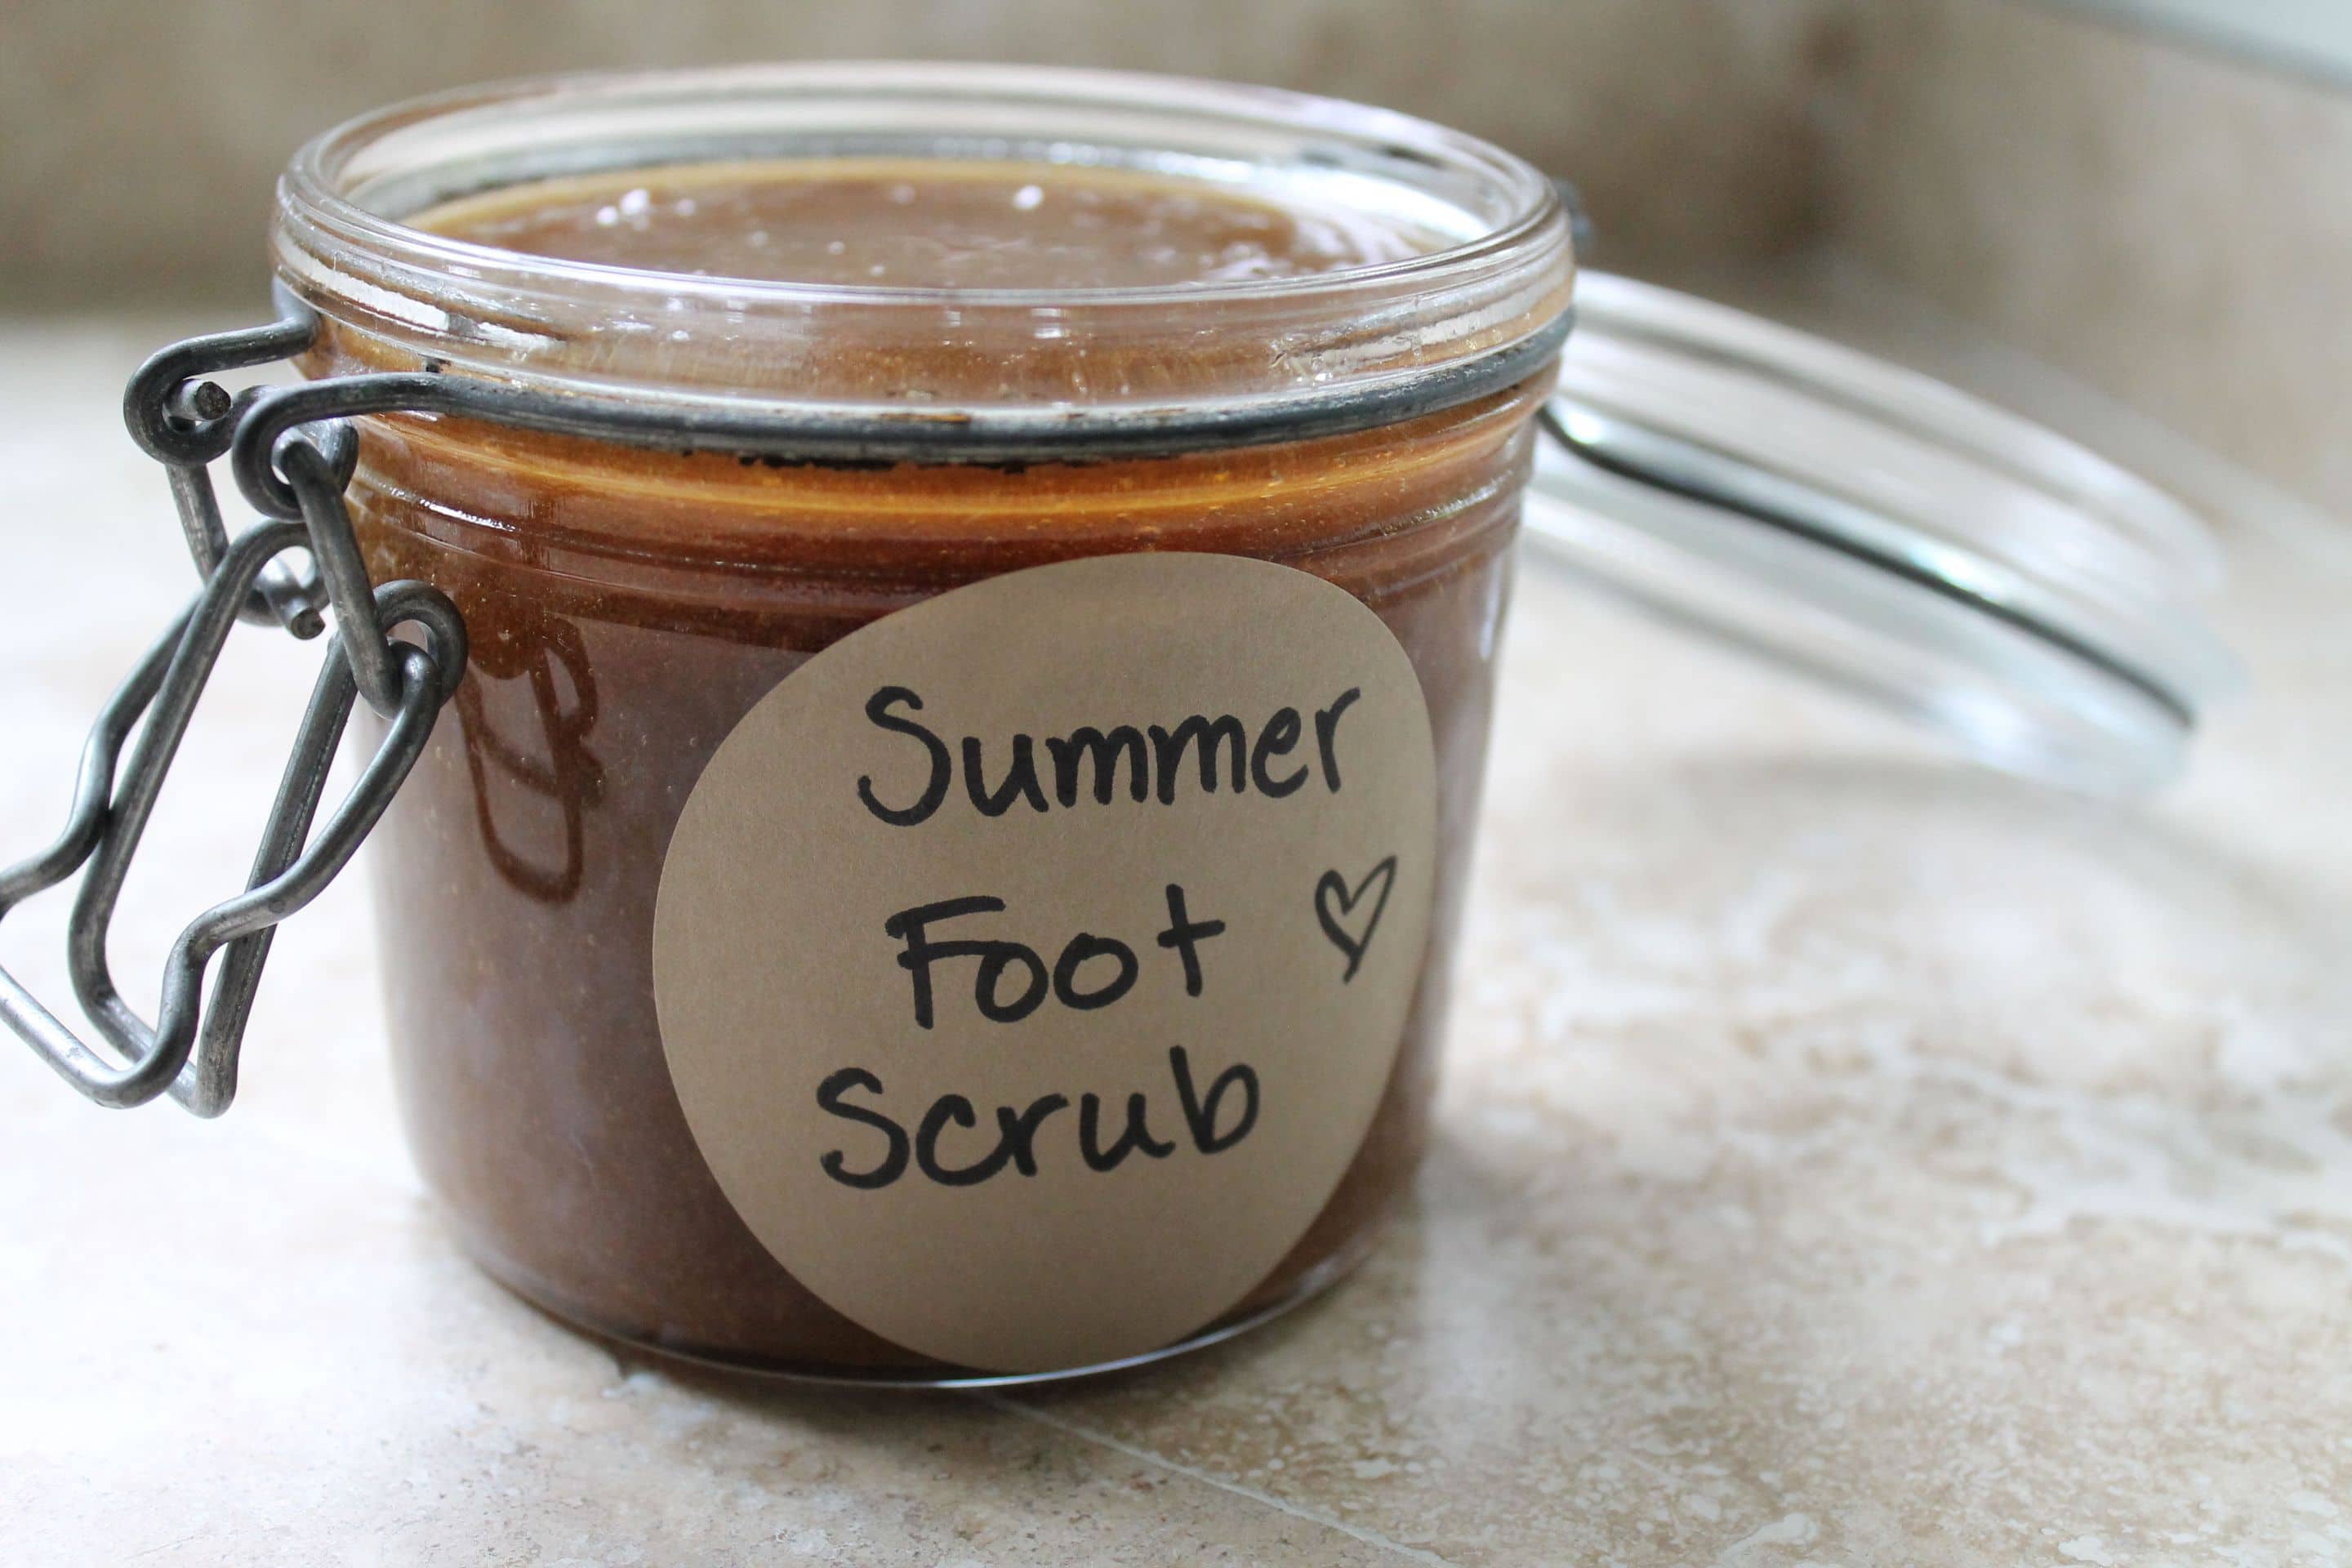 Summer Softening Foot Scrub